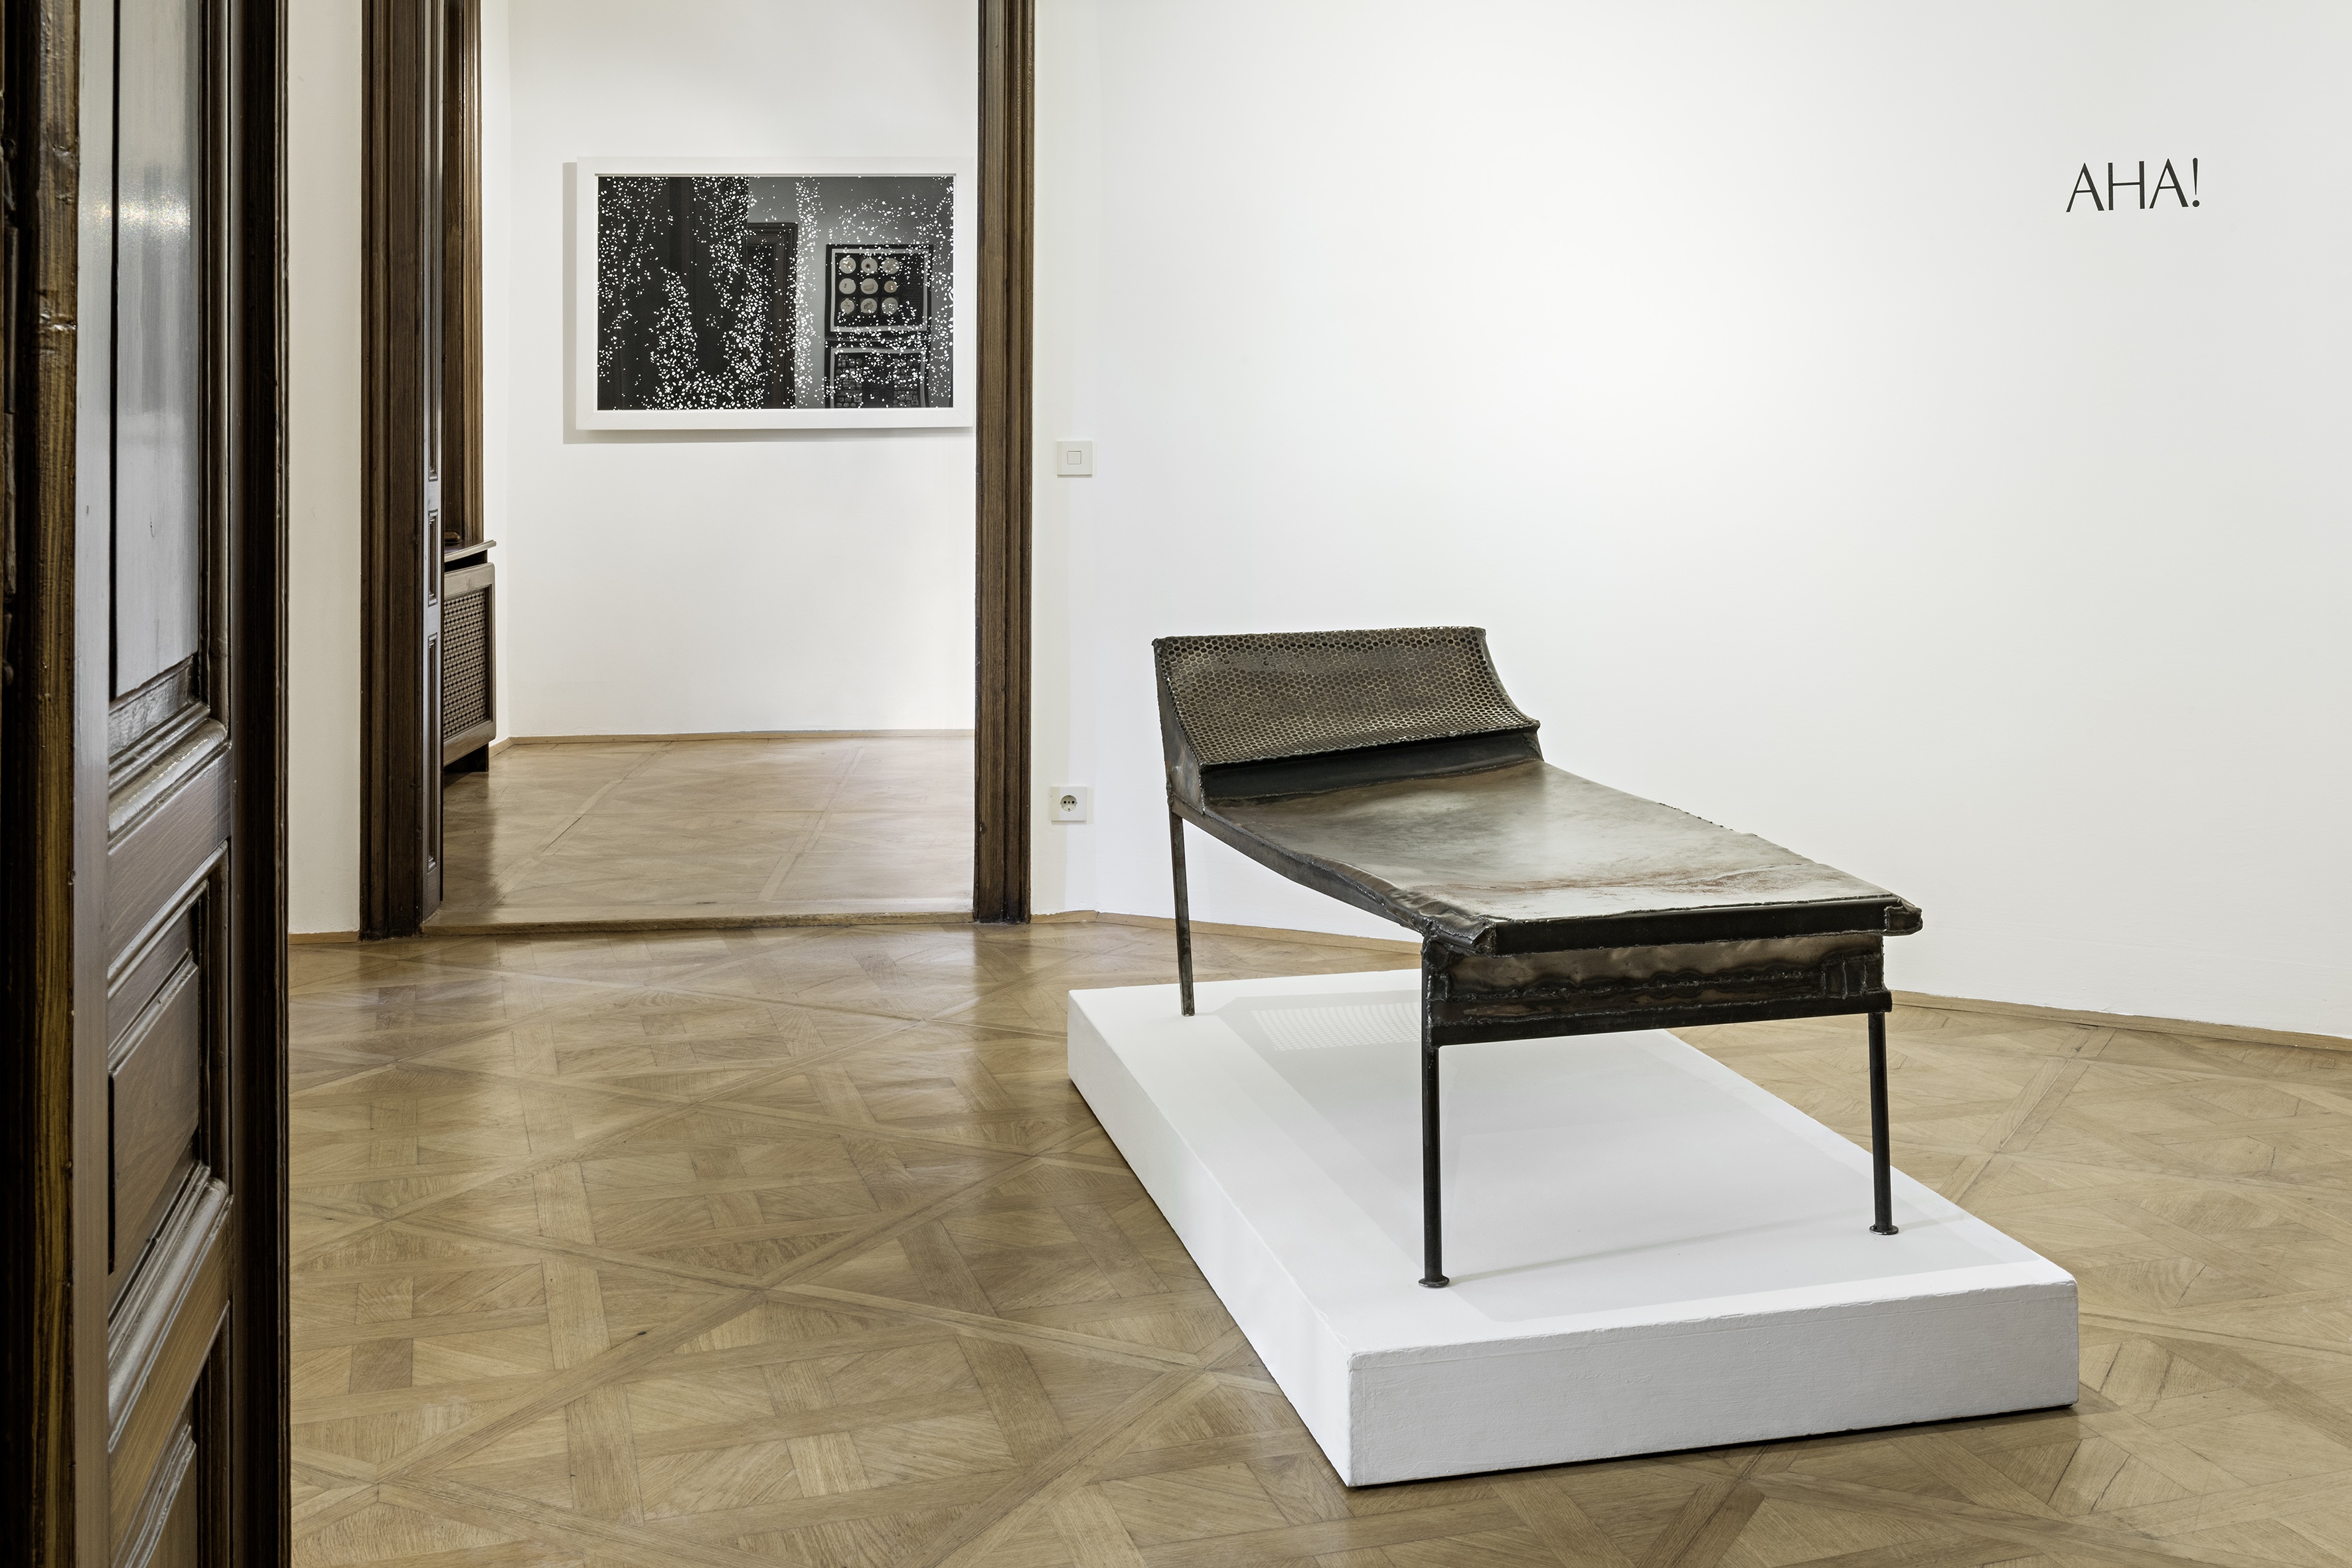 ジークムント・フロイト博物館の現代美術：フランツ・ヴェストの「寝椅子」